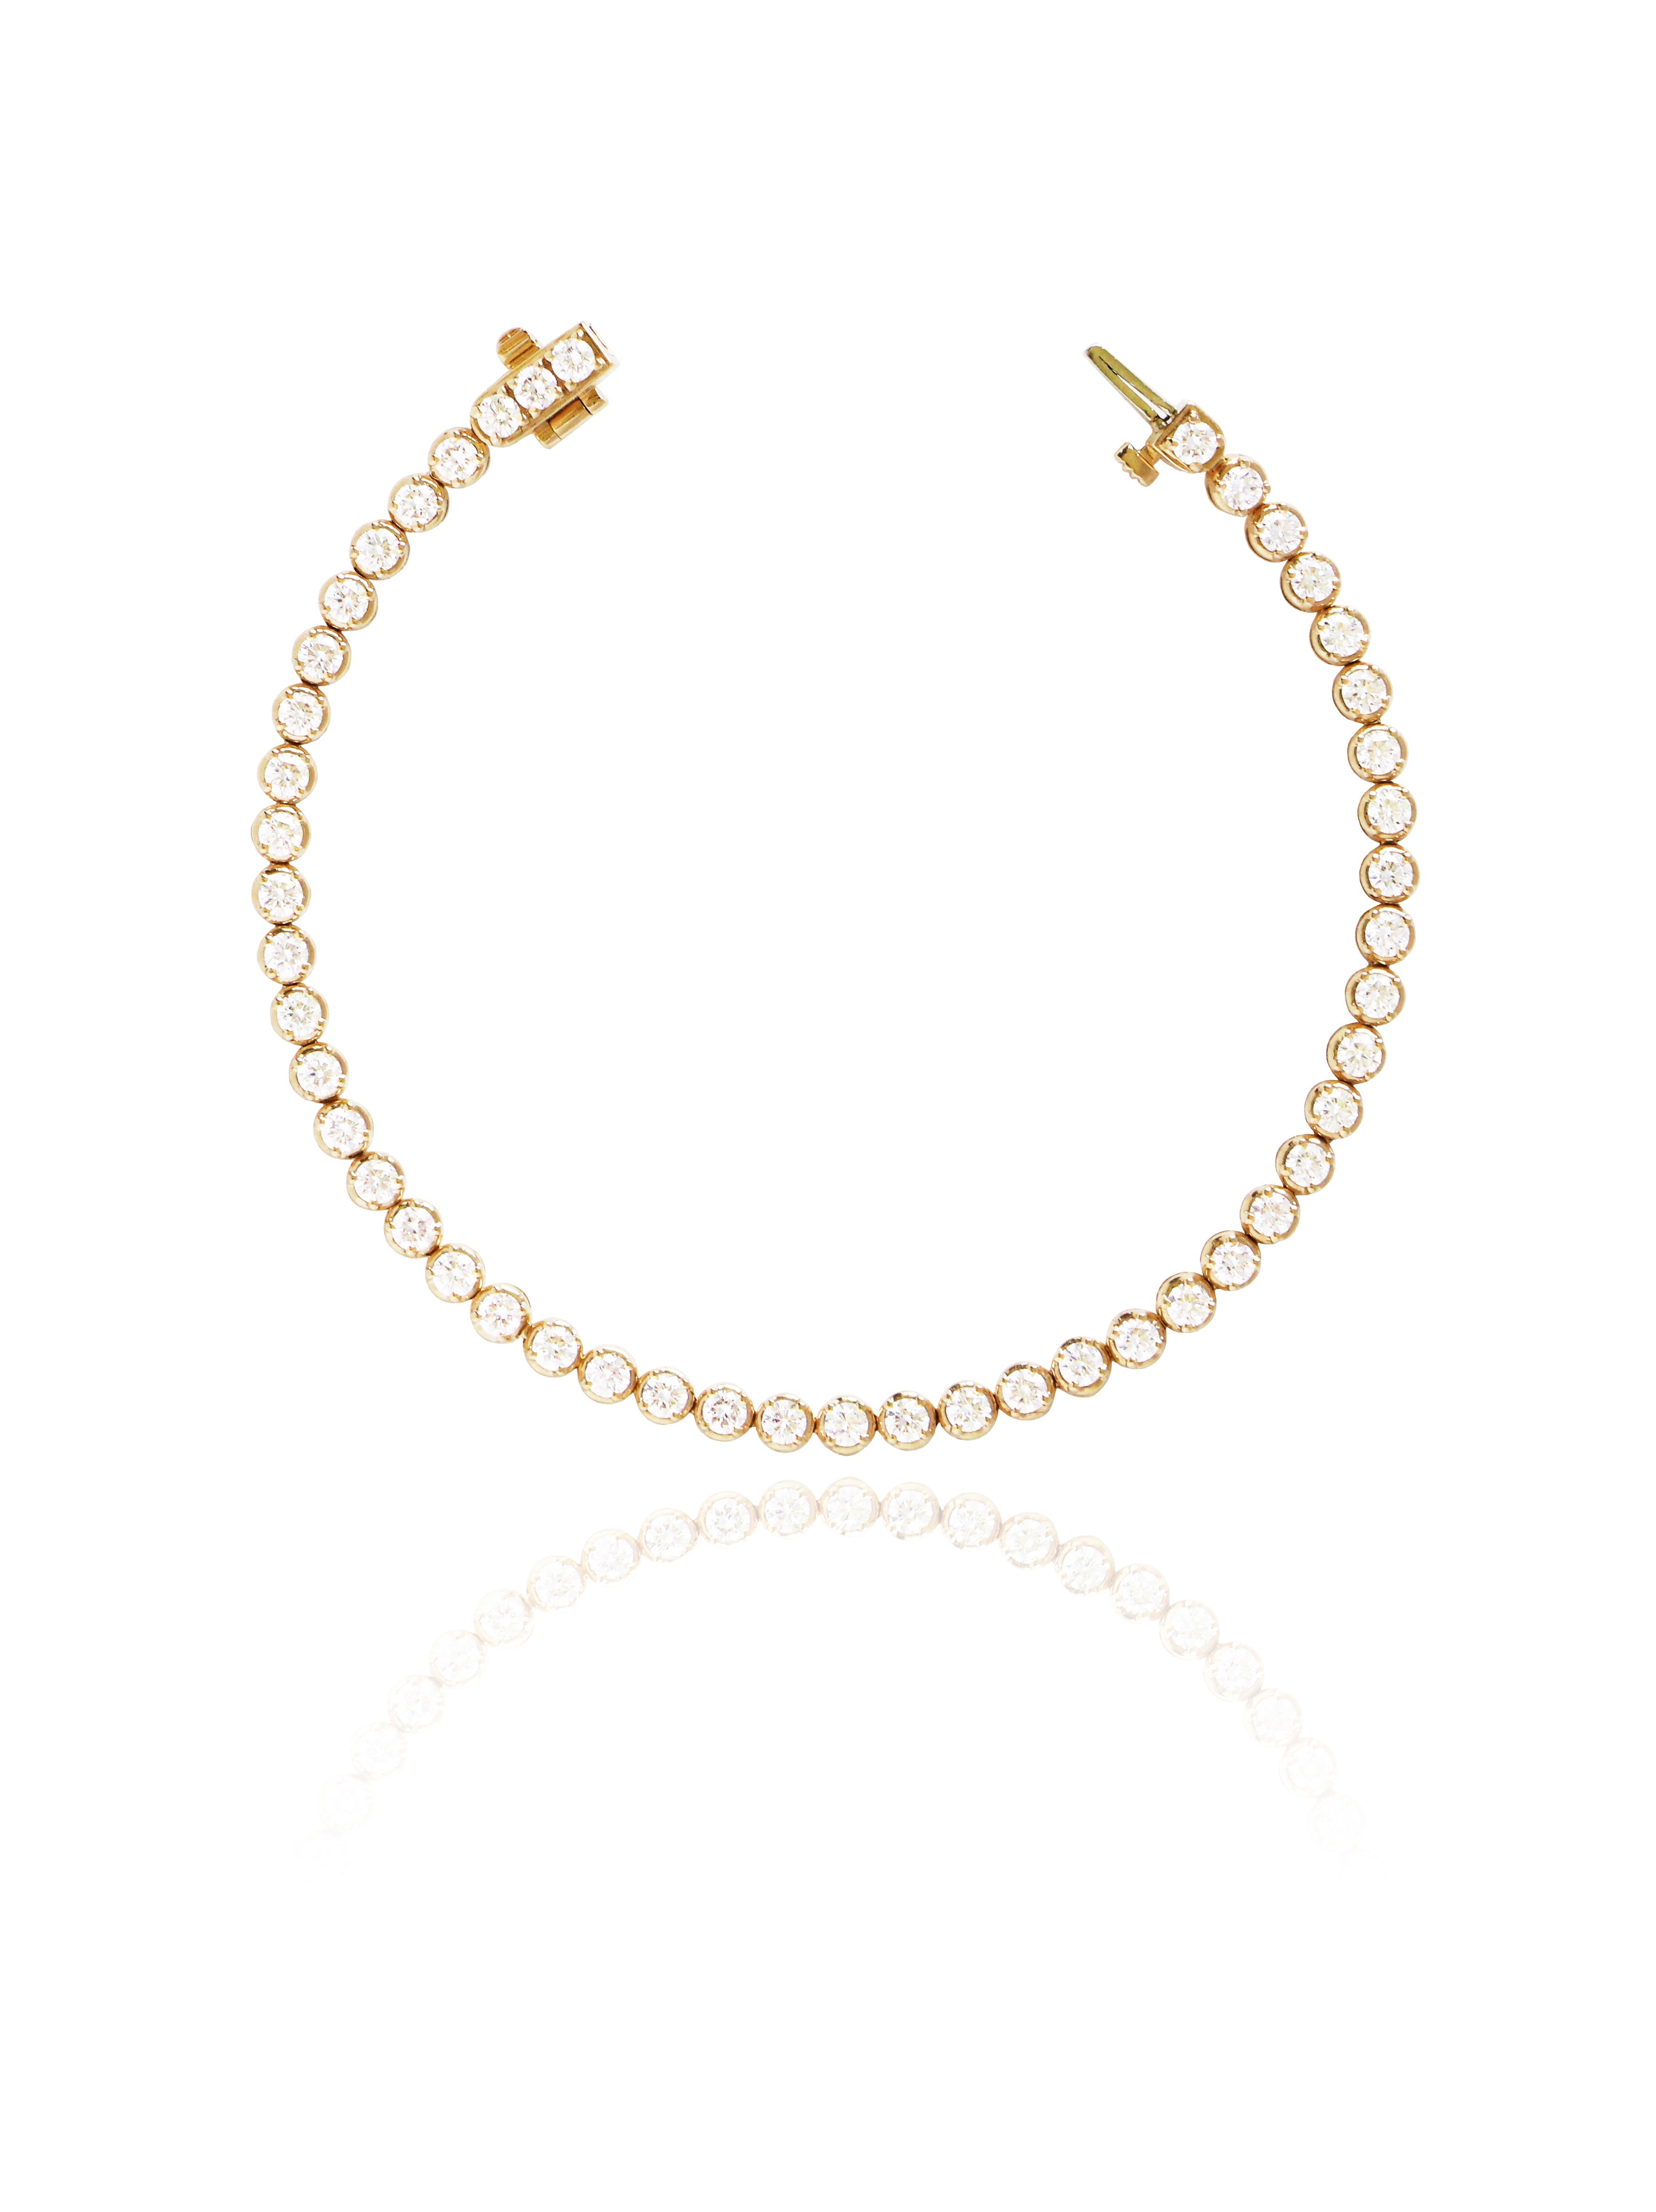 Carmen Diamond Bracelet in White/Rose/Yellow Gold